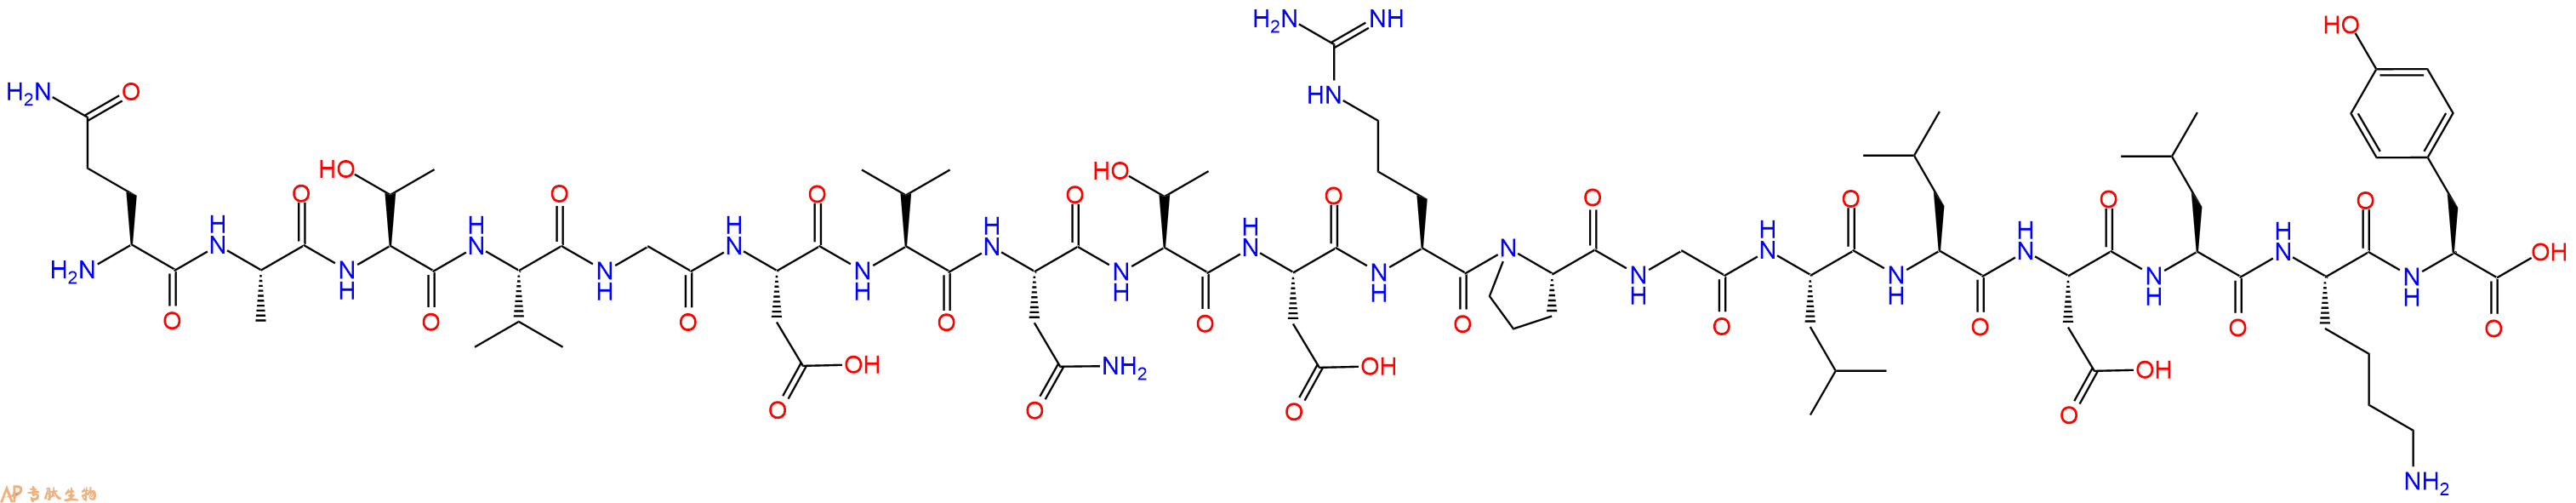 专肽生物产品[Tyr19]Diazepam-Binding Inhibitor Fragment